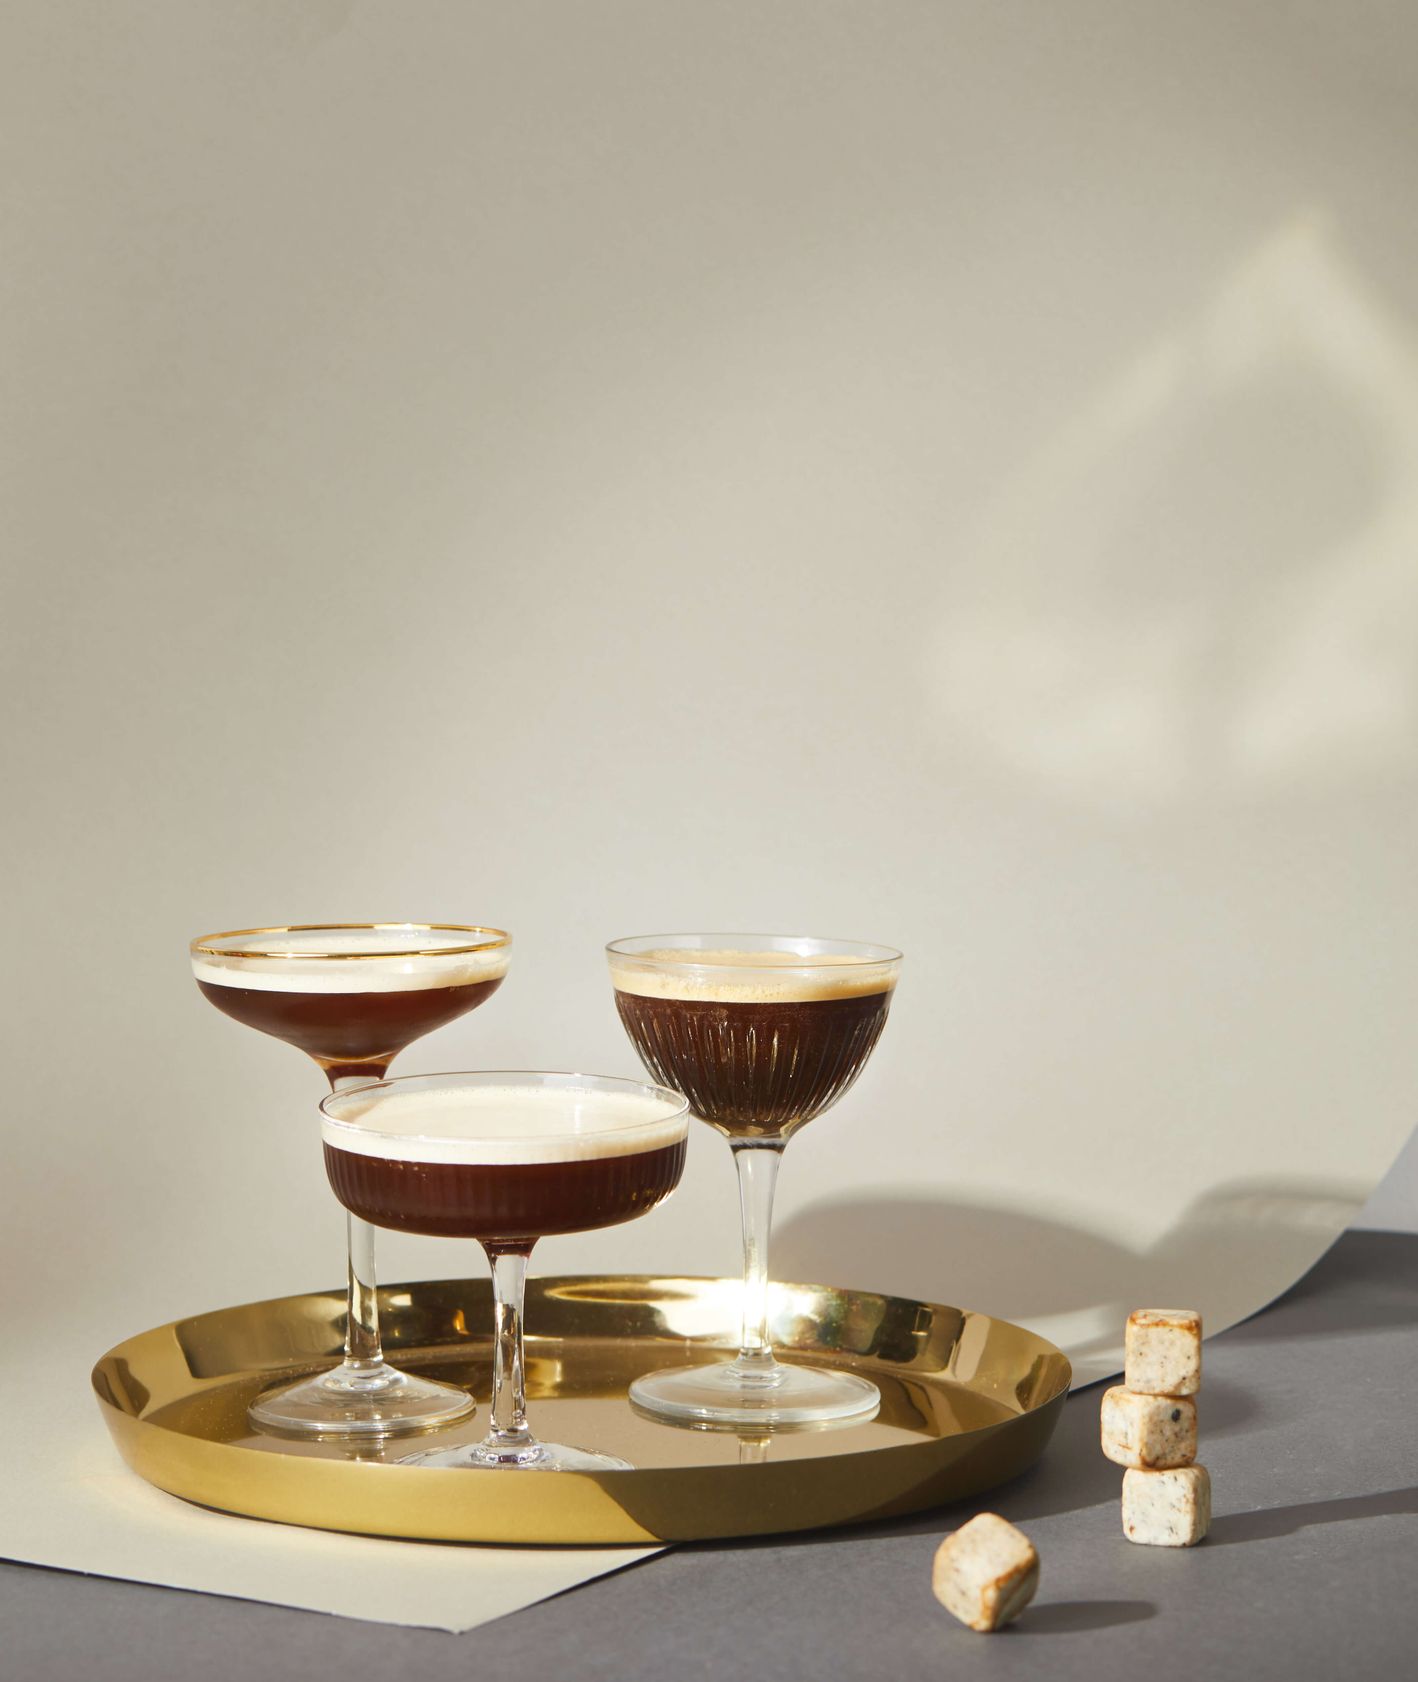 Drink z kawy - Cranbesso Martini (fot. Maciek Niemojewski)